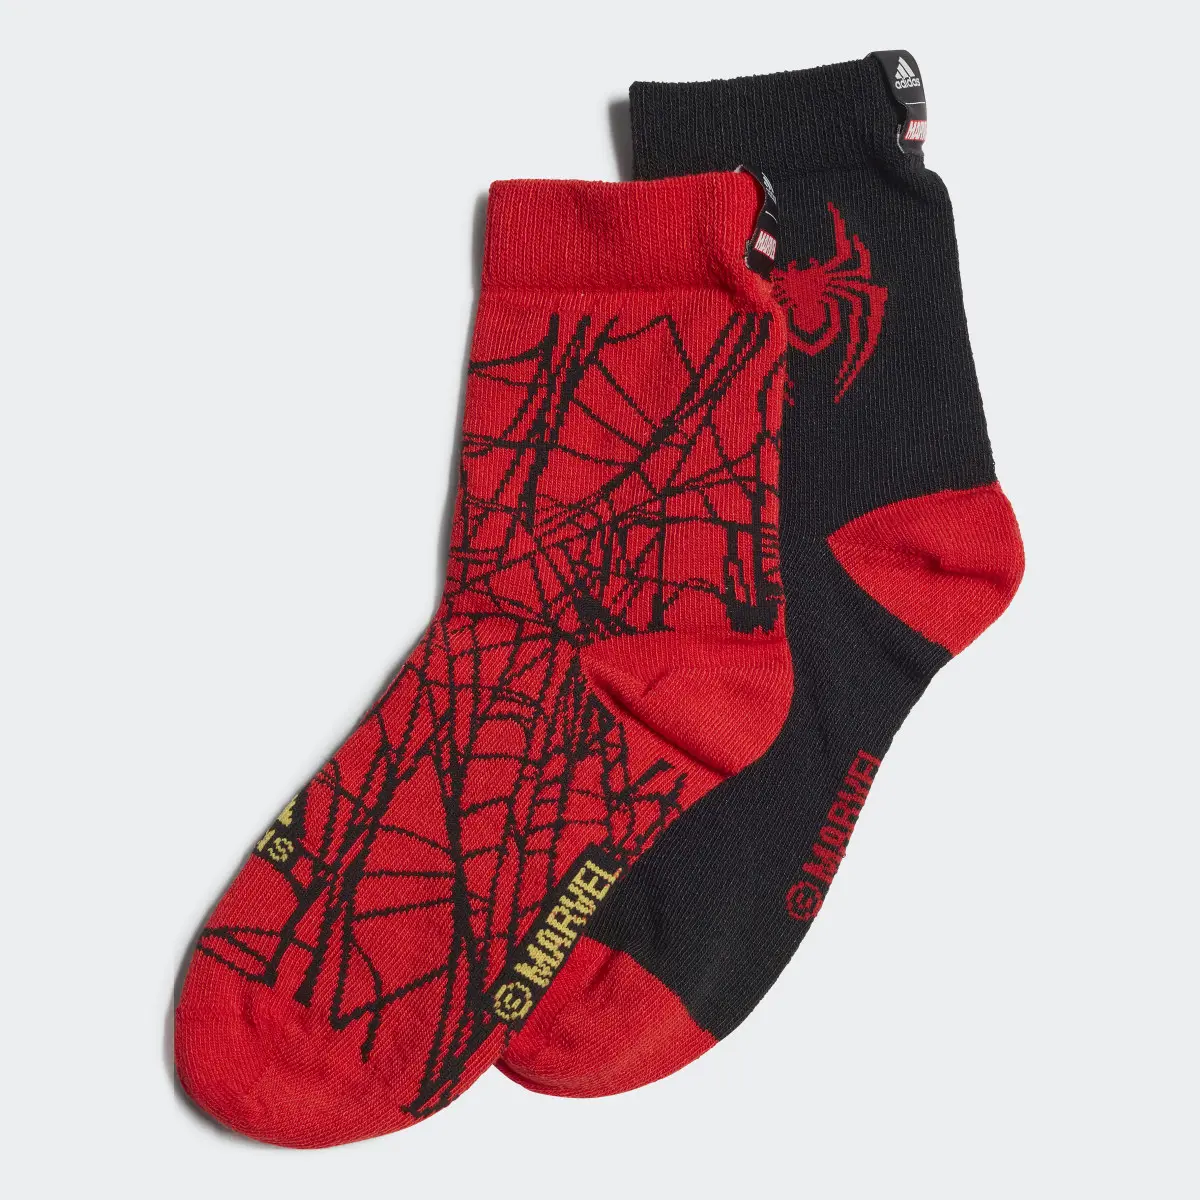 Adidas x Marvel's Miles Morales Socks 2 Pairs. 1